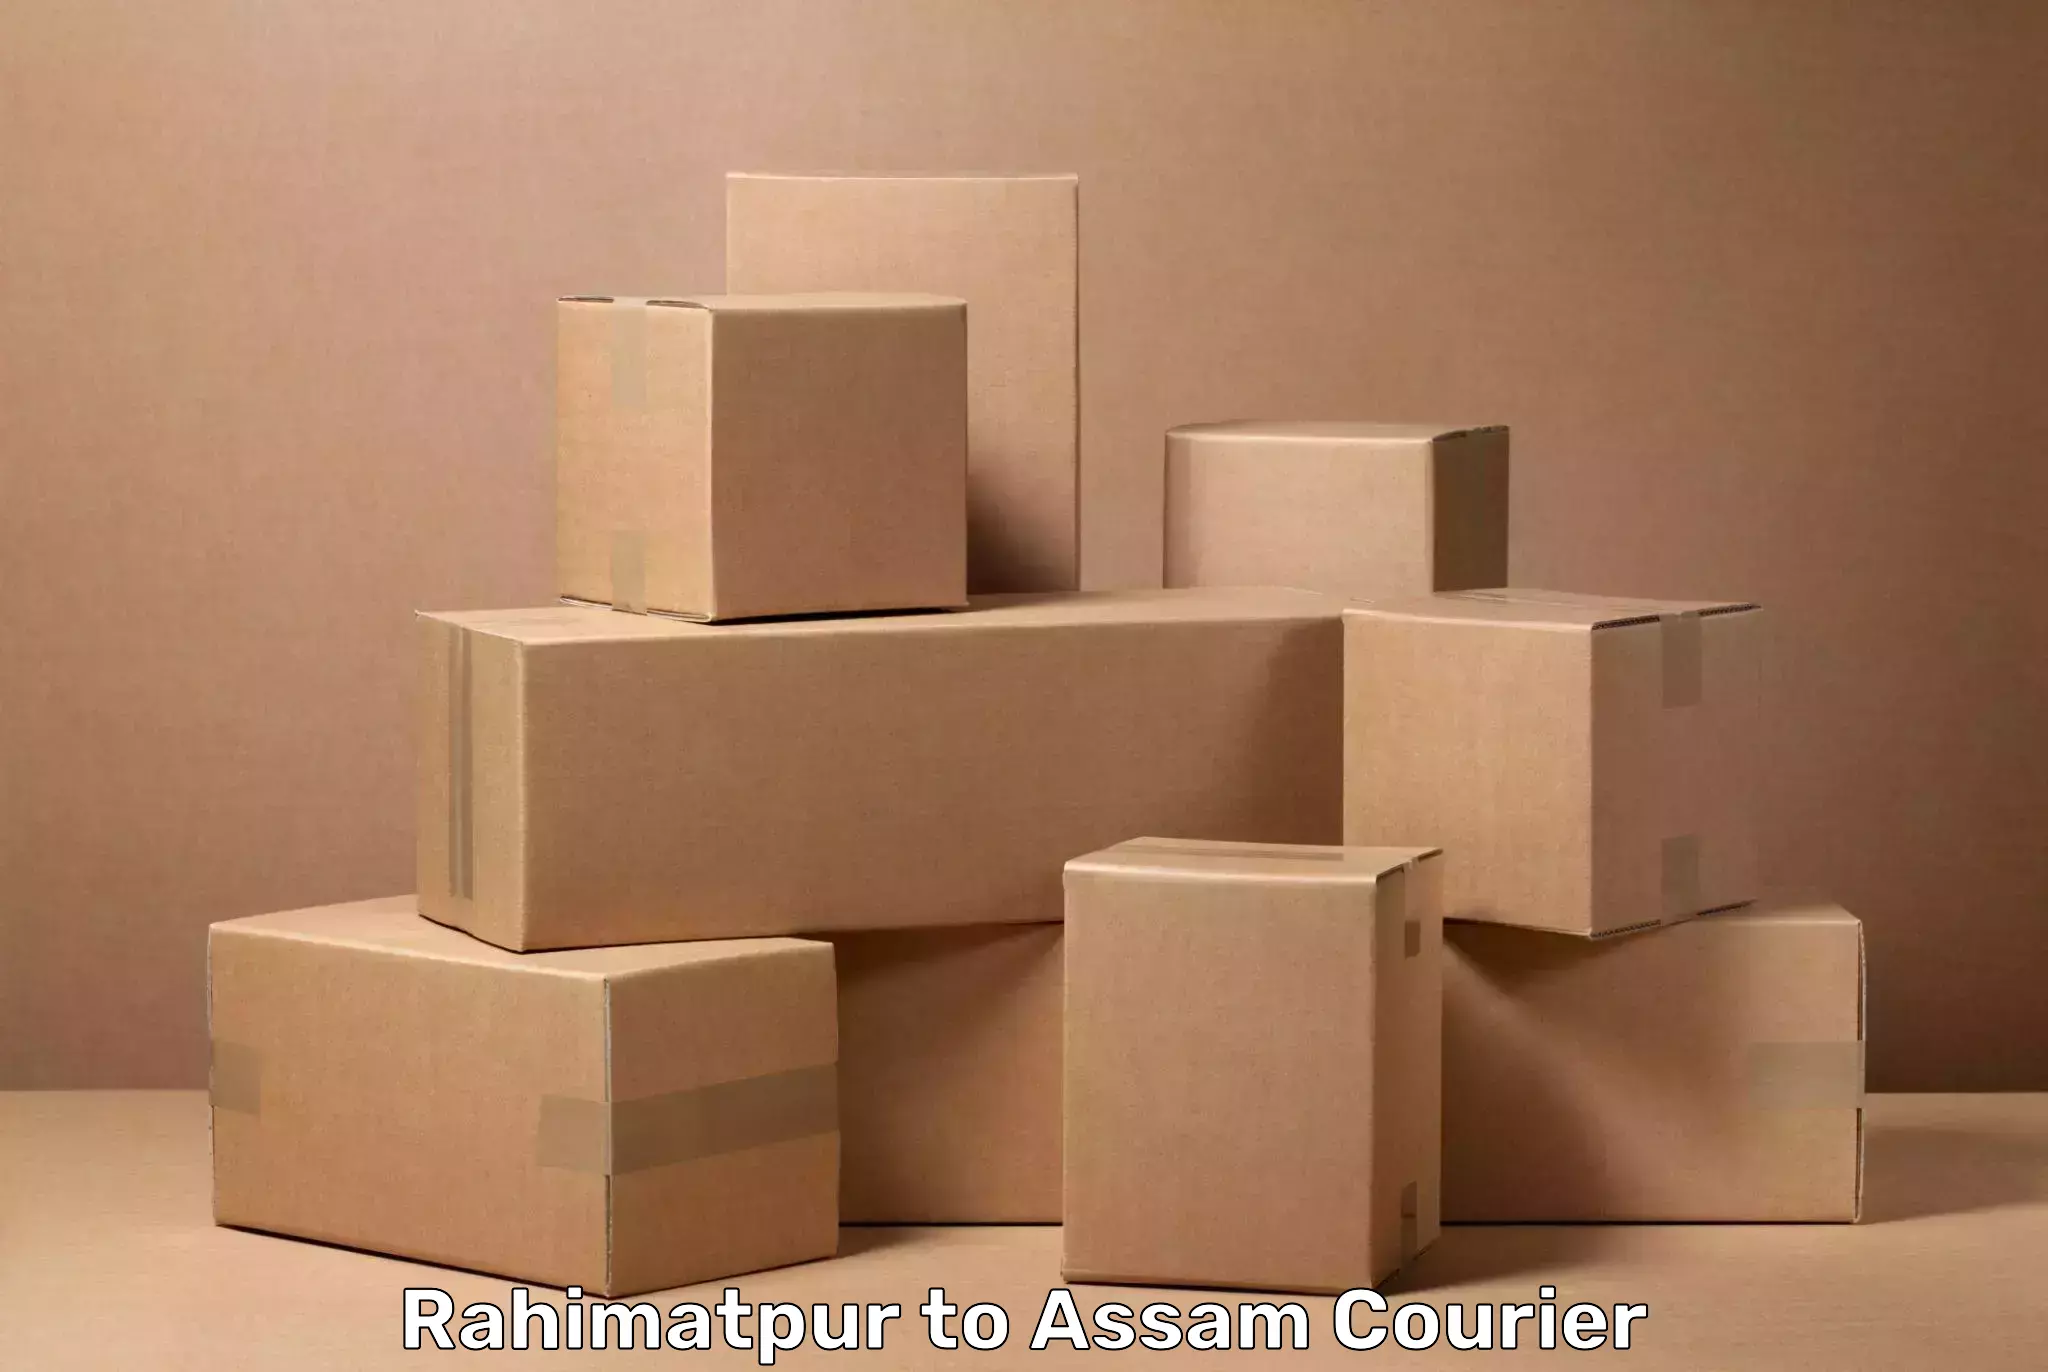 Online luggage shipping in Rahimatpur to Paneri Kamrup